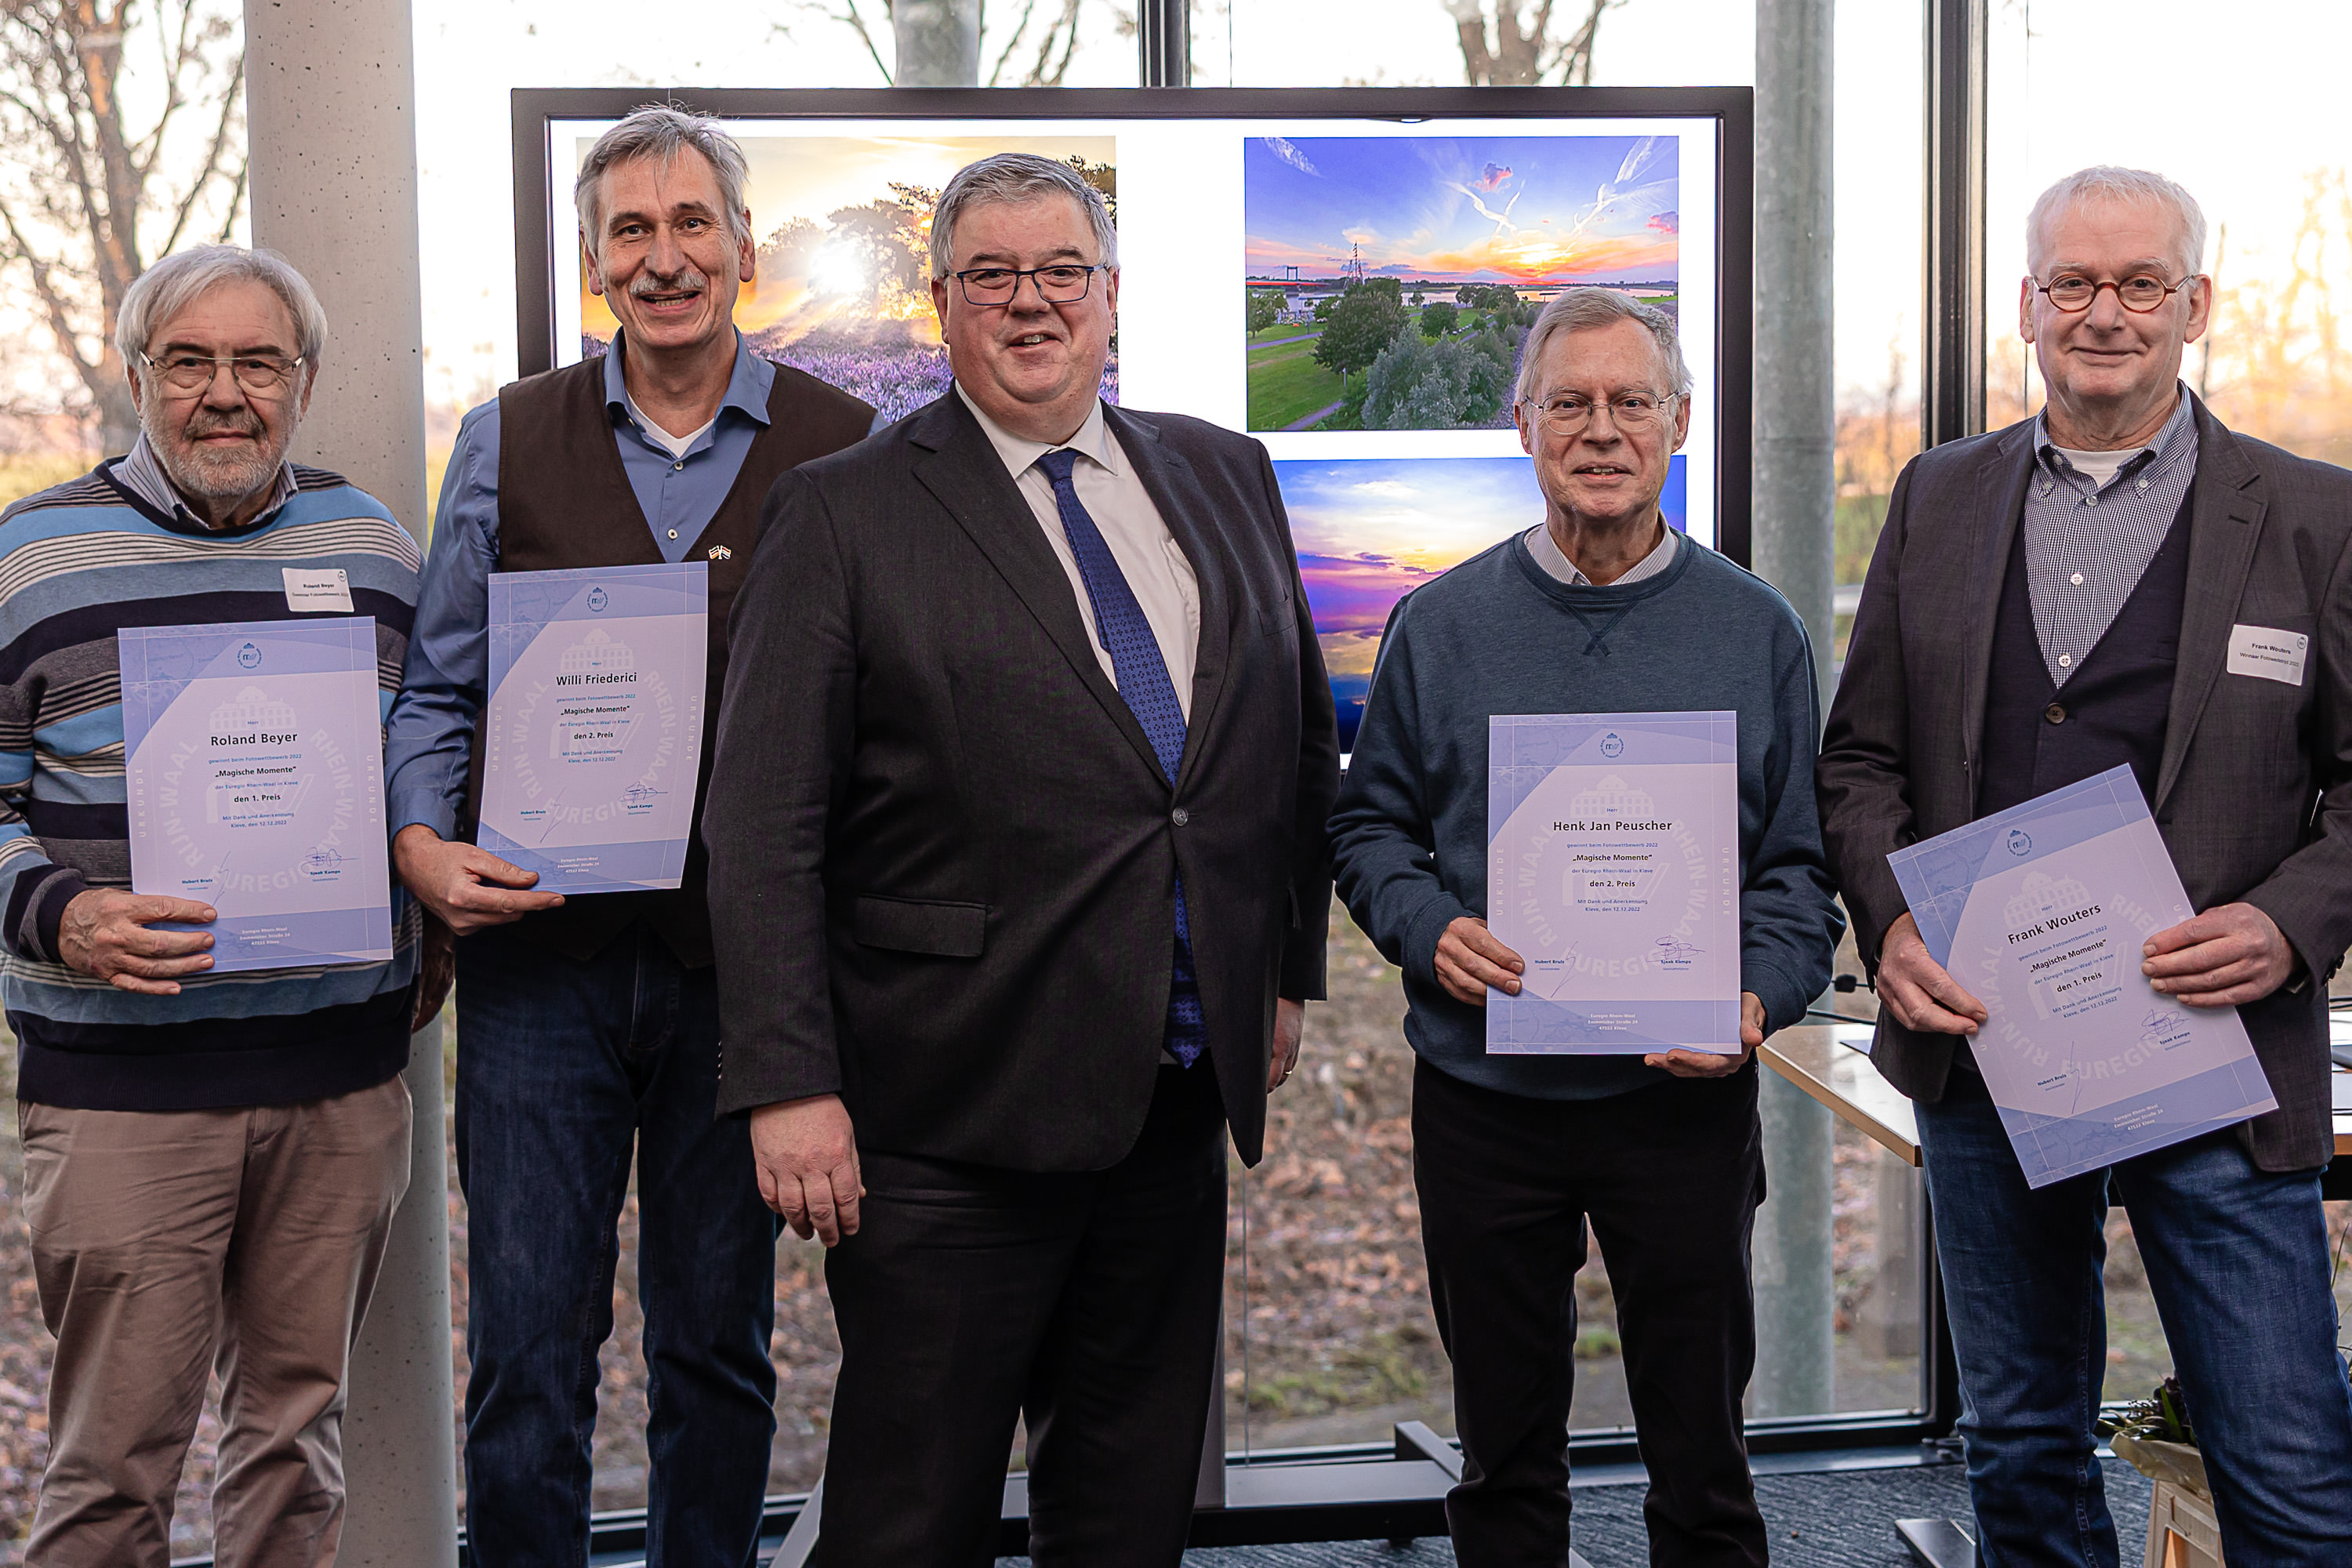 Winnaars fotowedstrijd Euregio Rijn-Waal 2022 gehuldigd